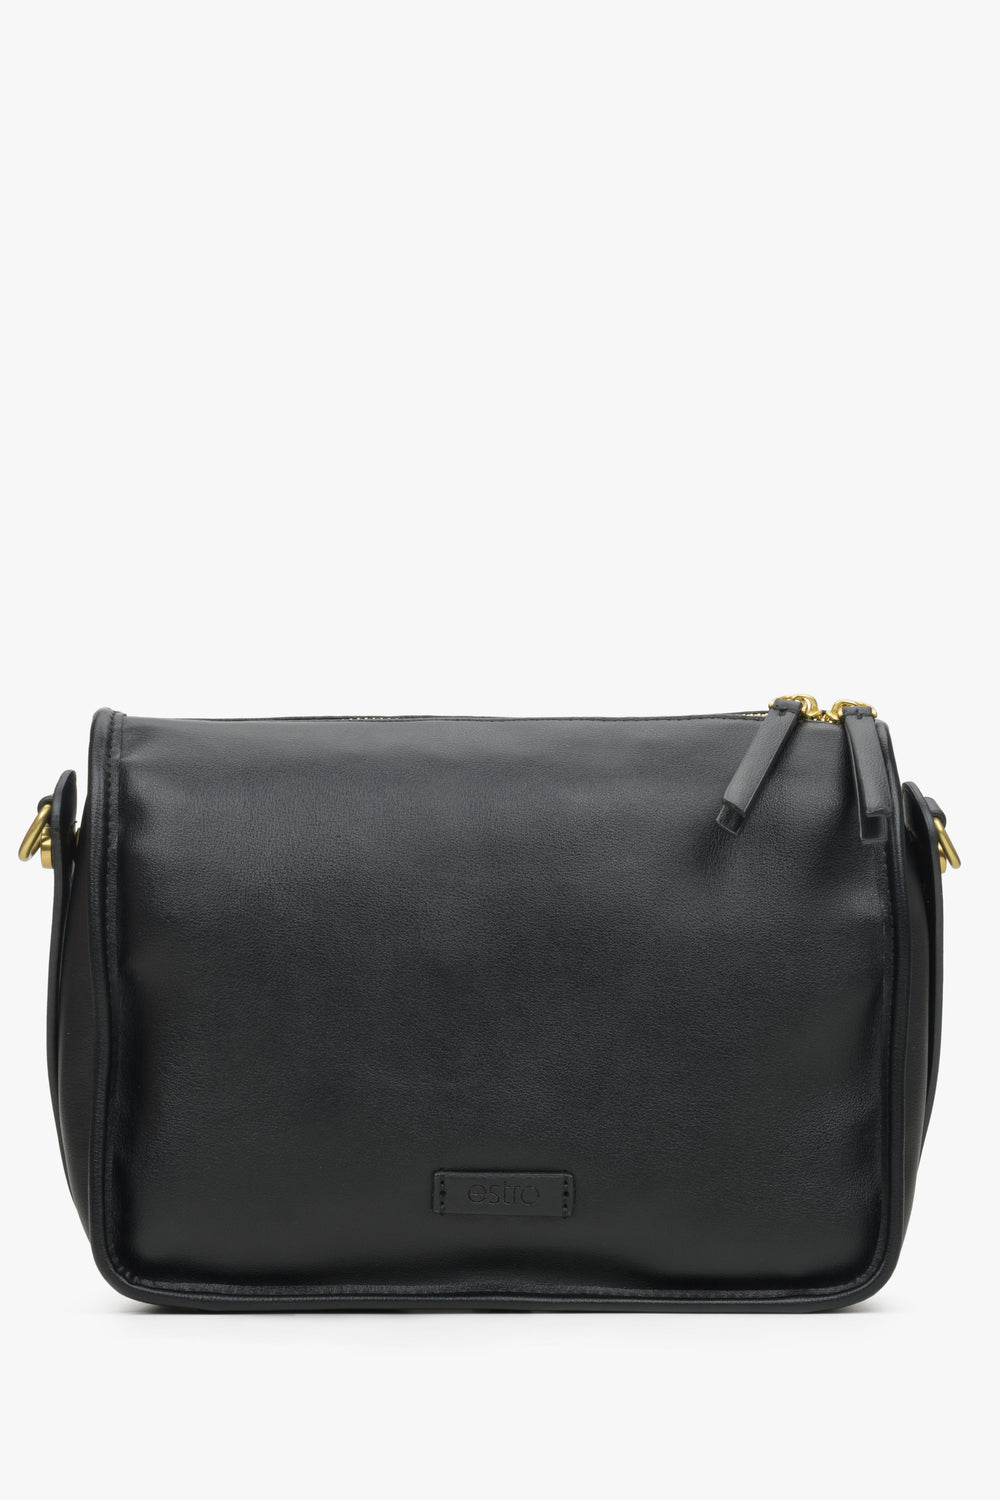 Black Leather Shoulder Bag with Adjustable Strap Estro ER00114403.